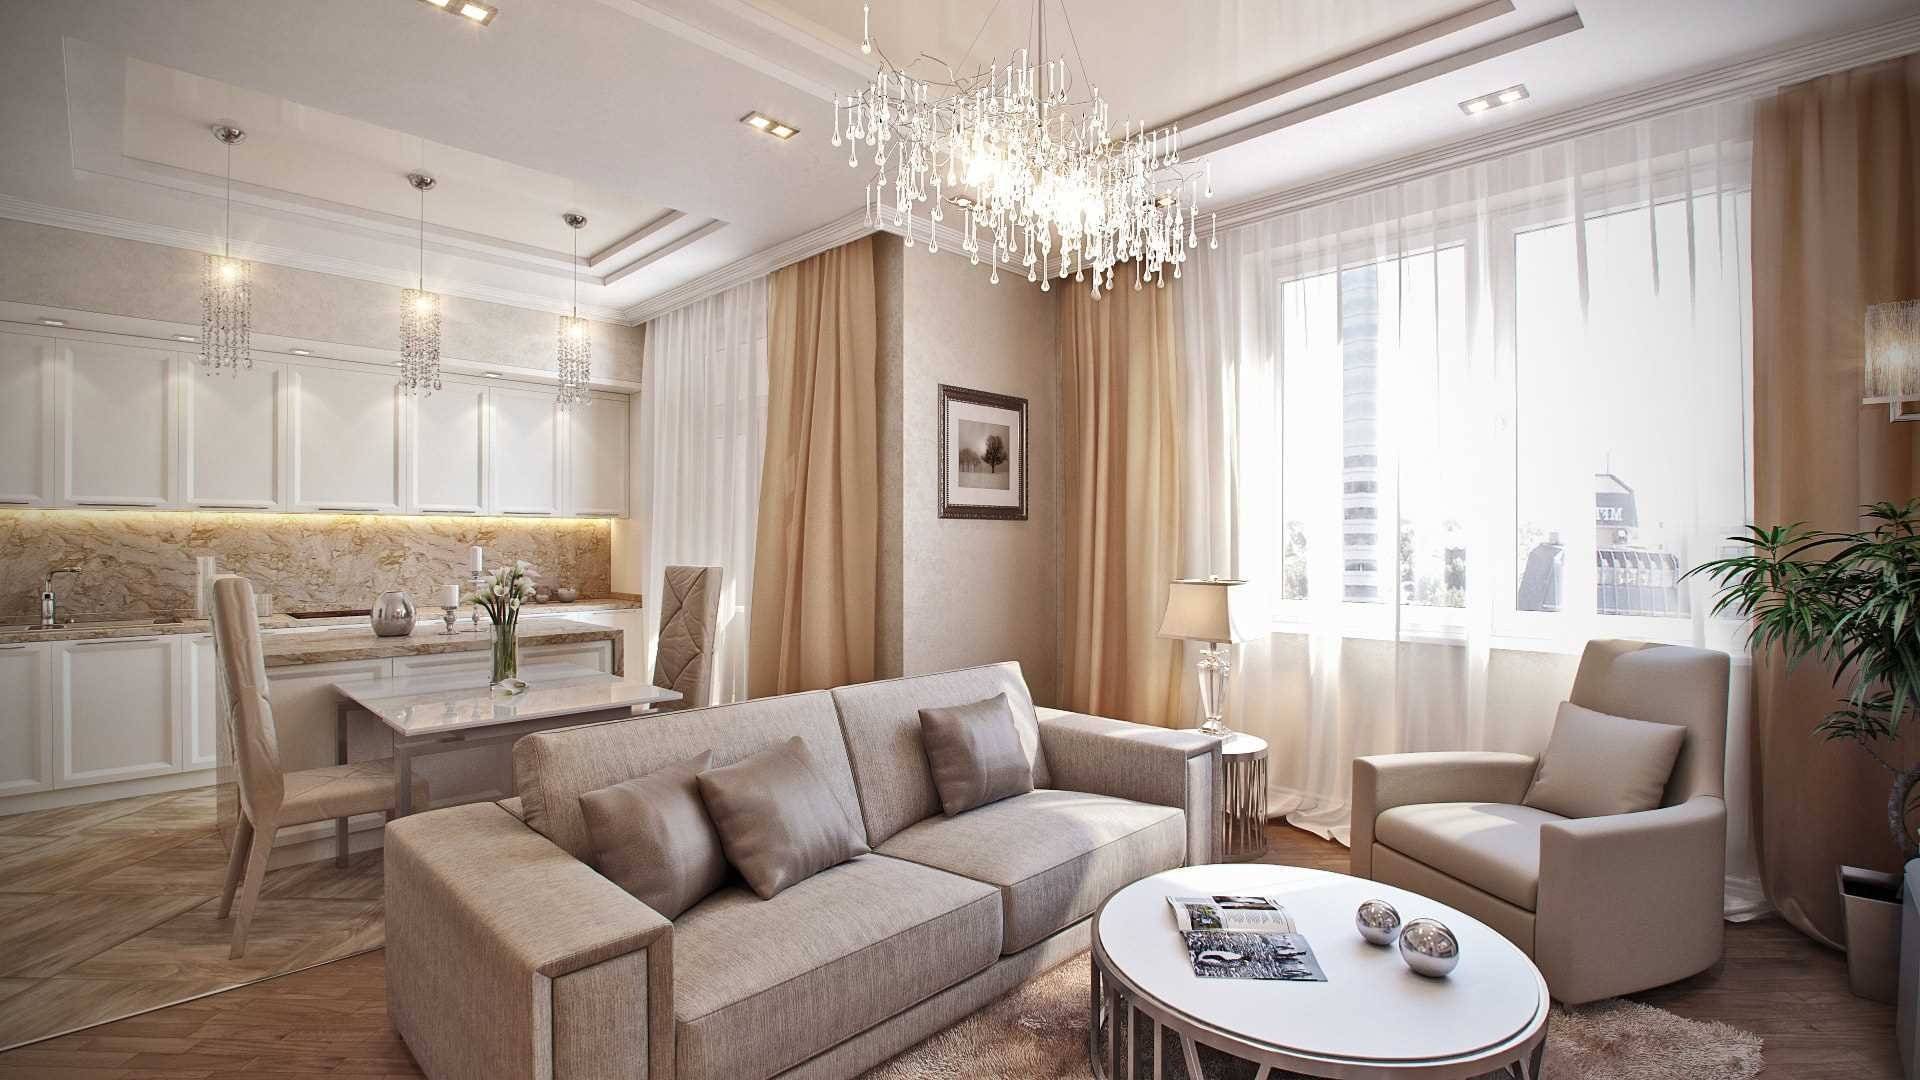 Дизайн квартиры: современная классика. классический дизайн квартиры — 110 реальных фото идеально оформленного интерьера